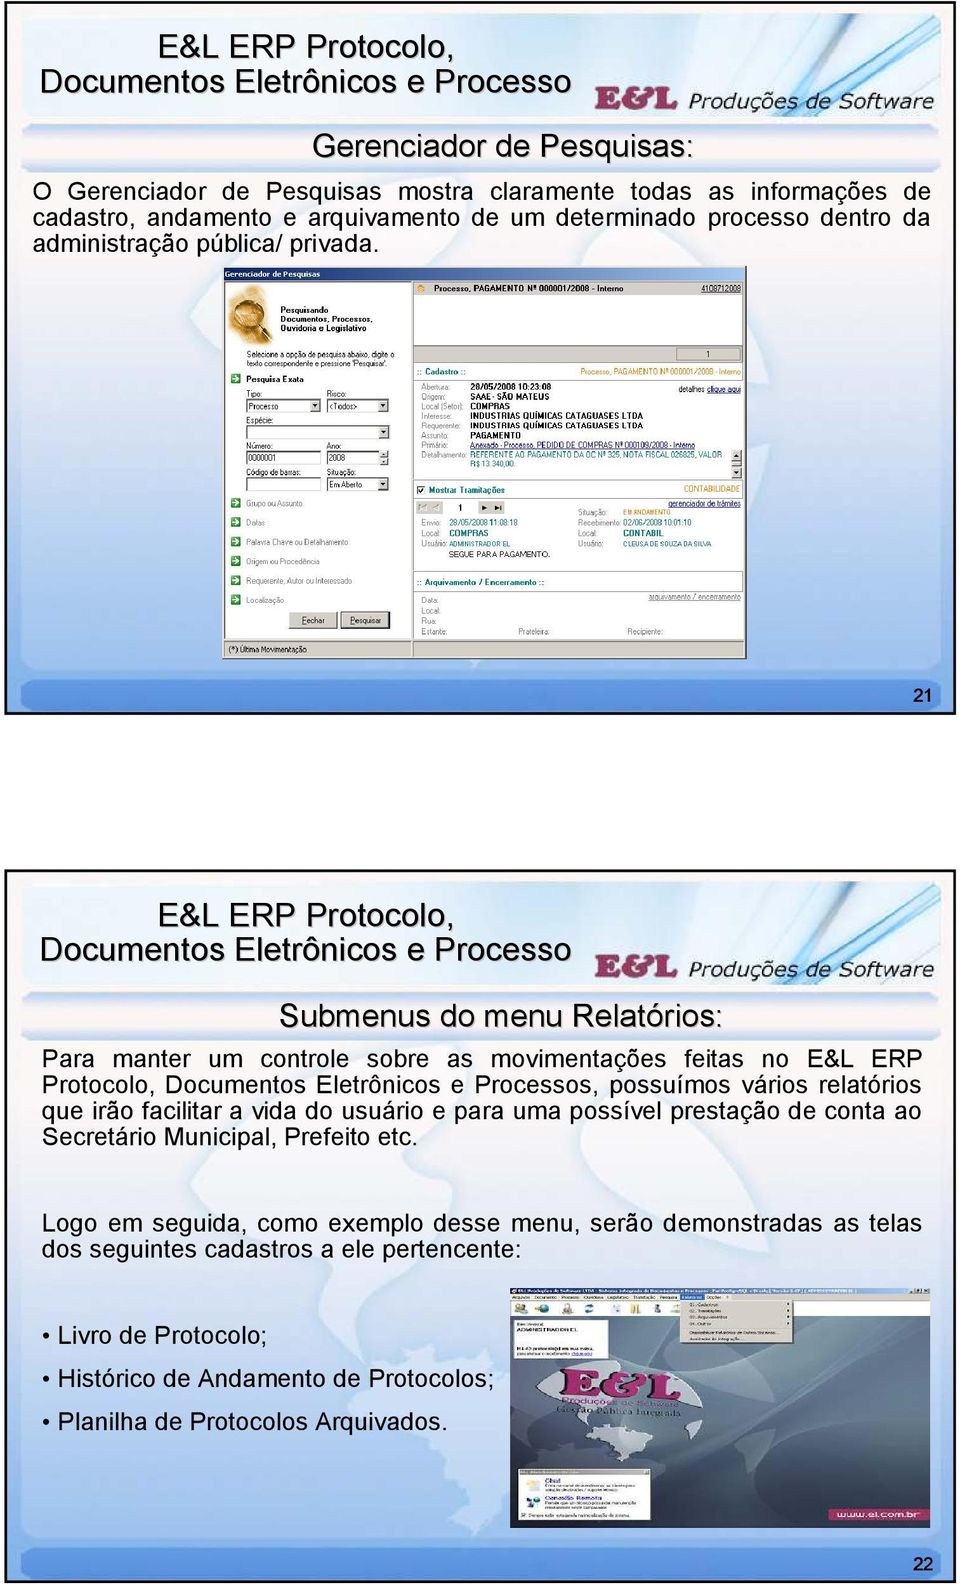 21 Submenus do menu Relatórios rios: Para manter um controle sobre as movimentações feitas no E&L ERP Protocolo, s, possuímos vários relatórios que irão facilitar a